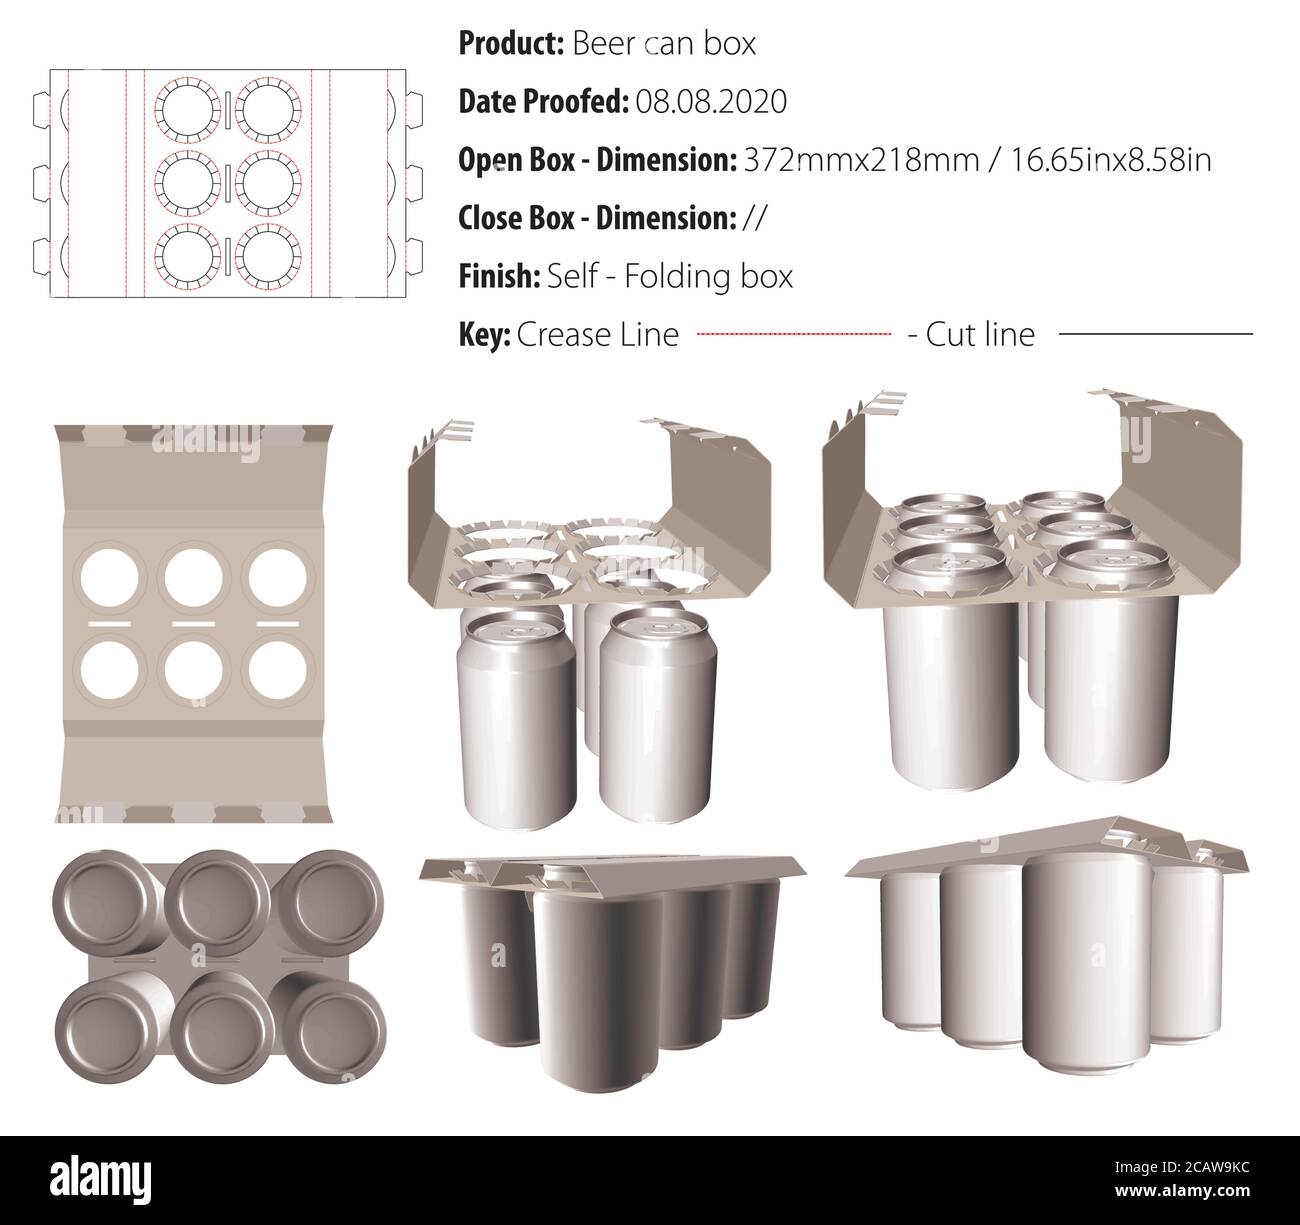 Bier Dose Box Verpackung Design Vorlage selflock die cut - Vektor Stock Vektor